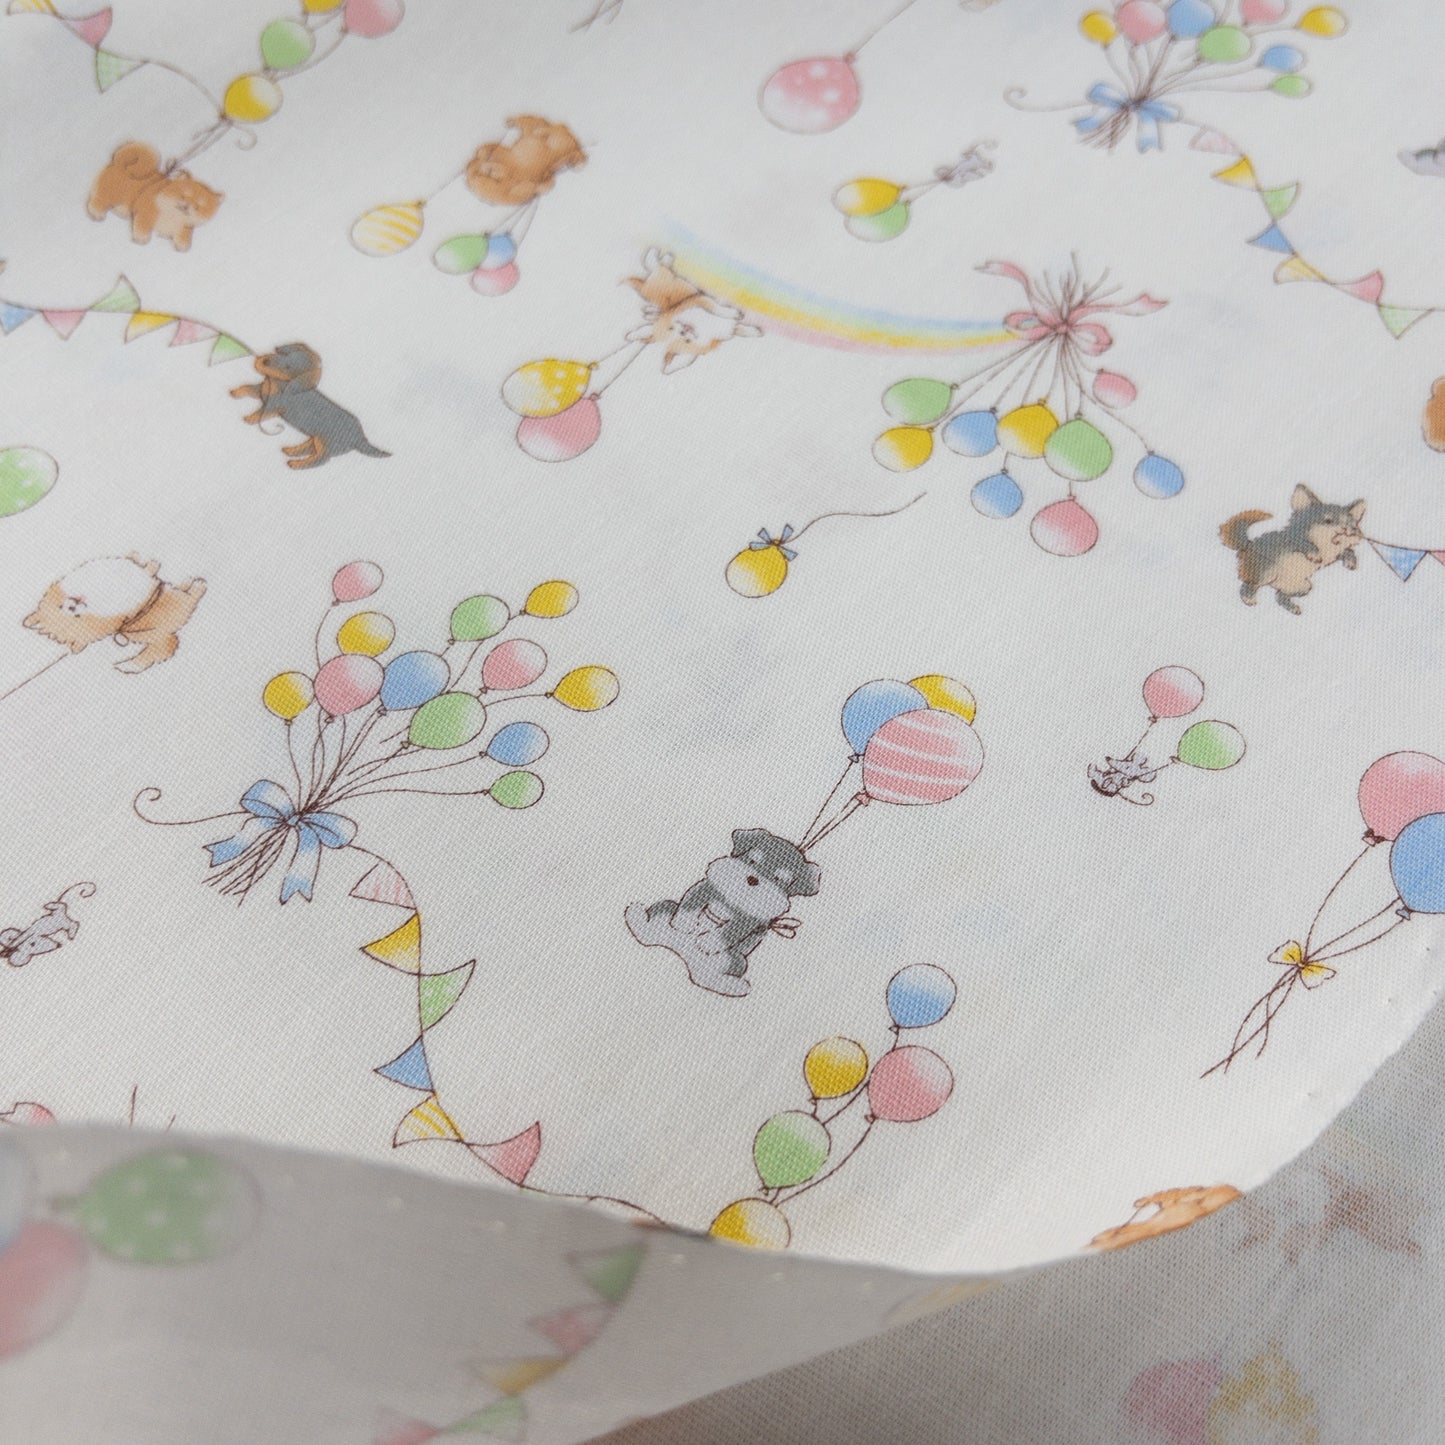 Japan | balloon puppies 氣球小狗 | cotton printed sheeting 純棉